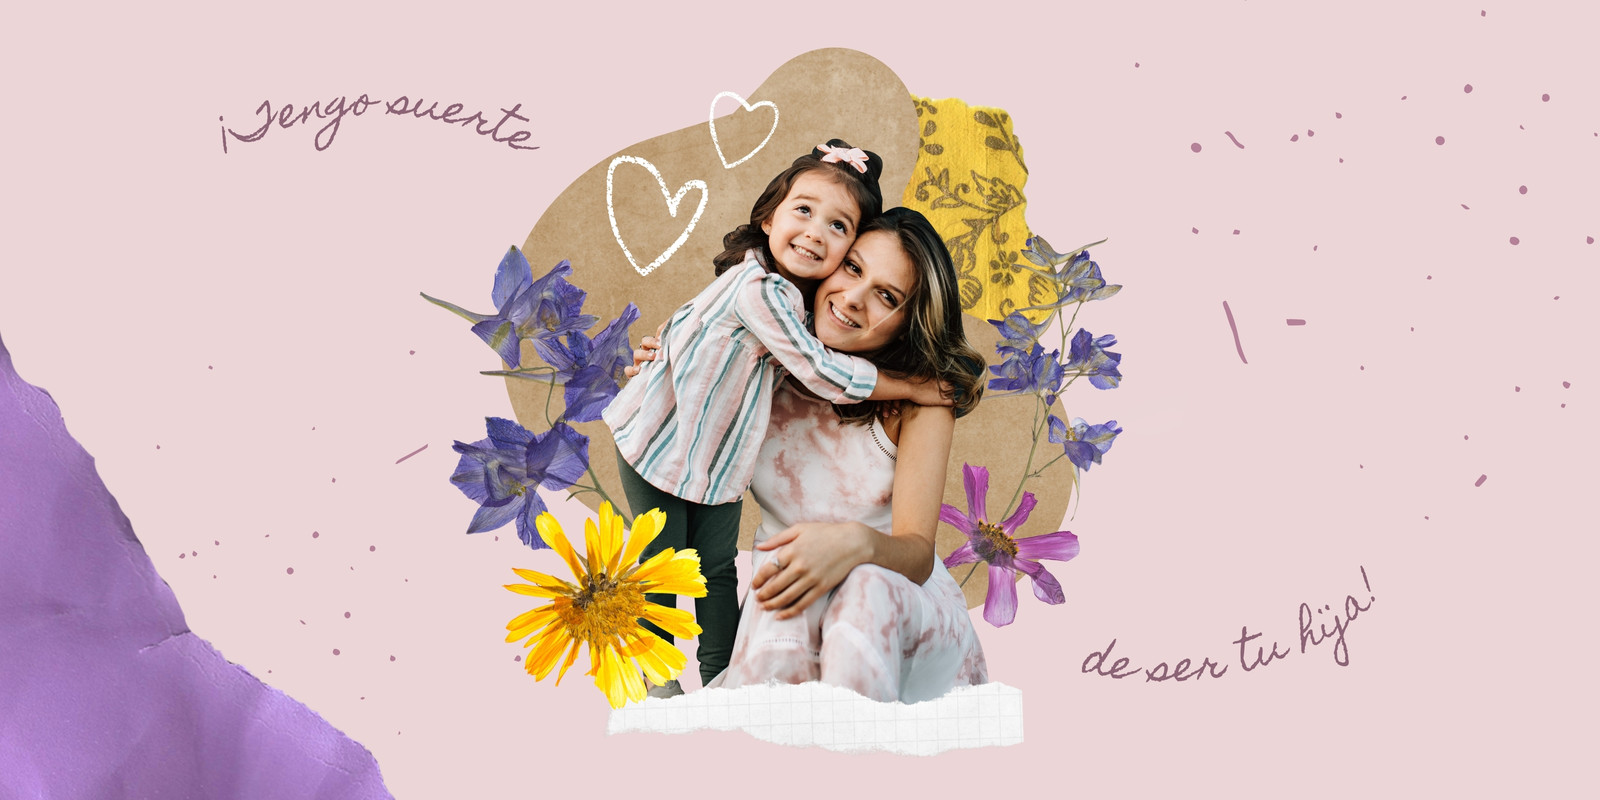 Rosa y Morado Femenino Álbum de Recortes/Collage General Felicitación Horizontal Tarjeta del Día de la Madre